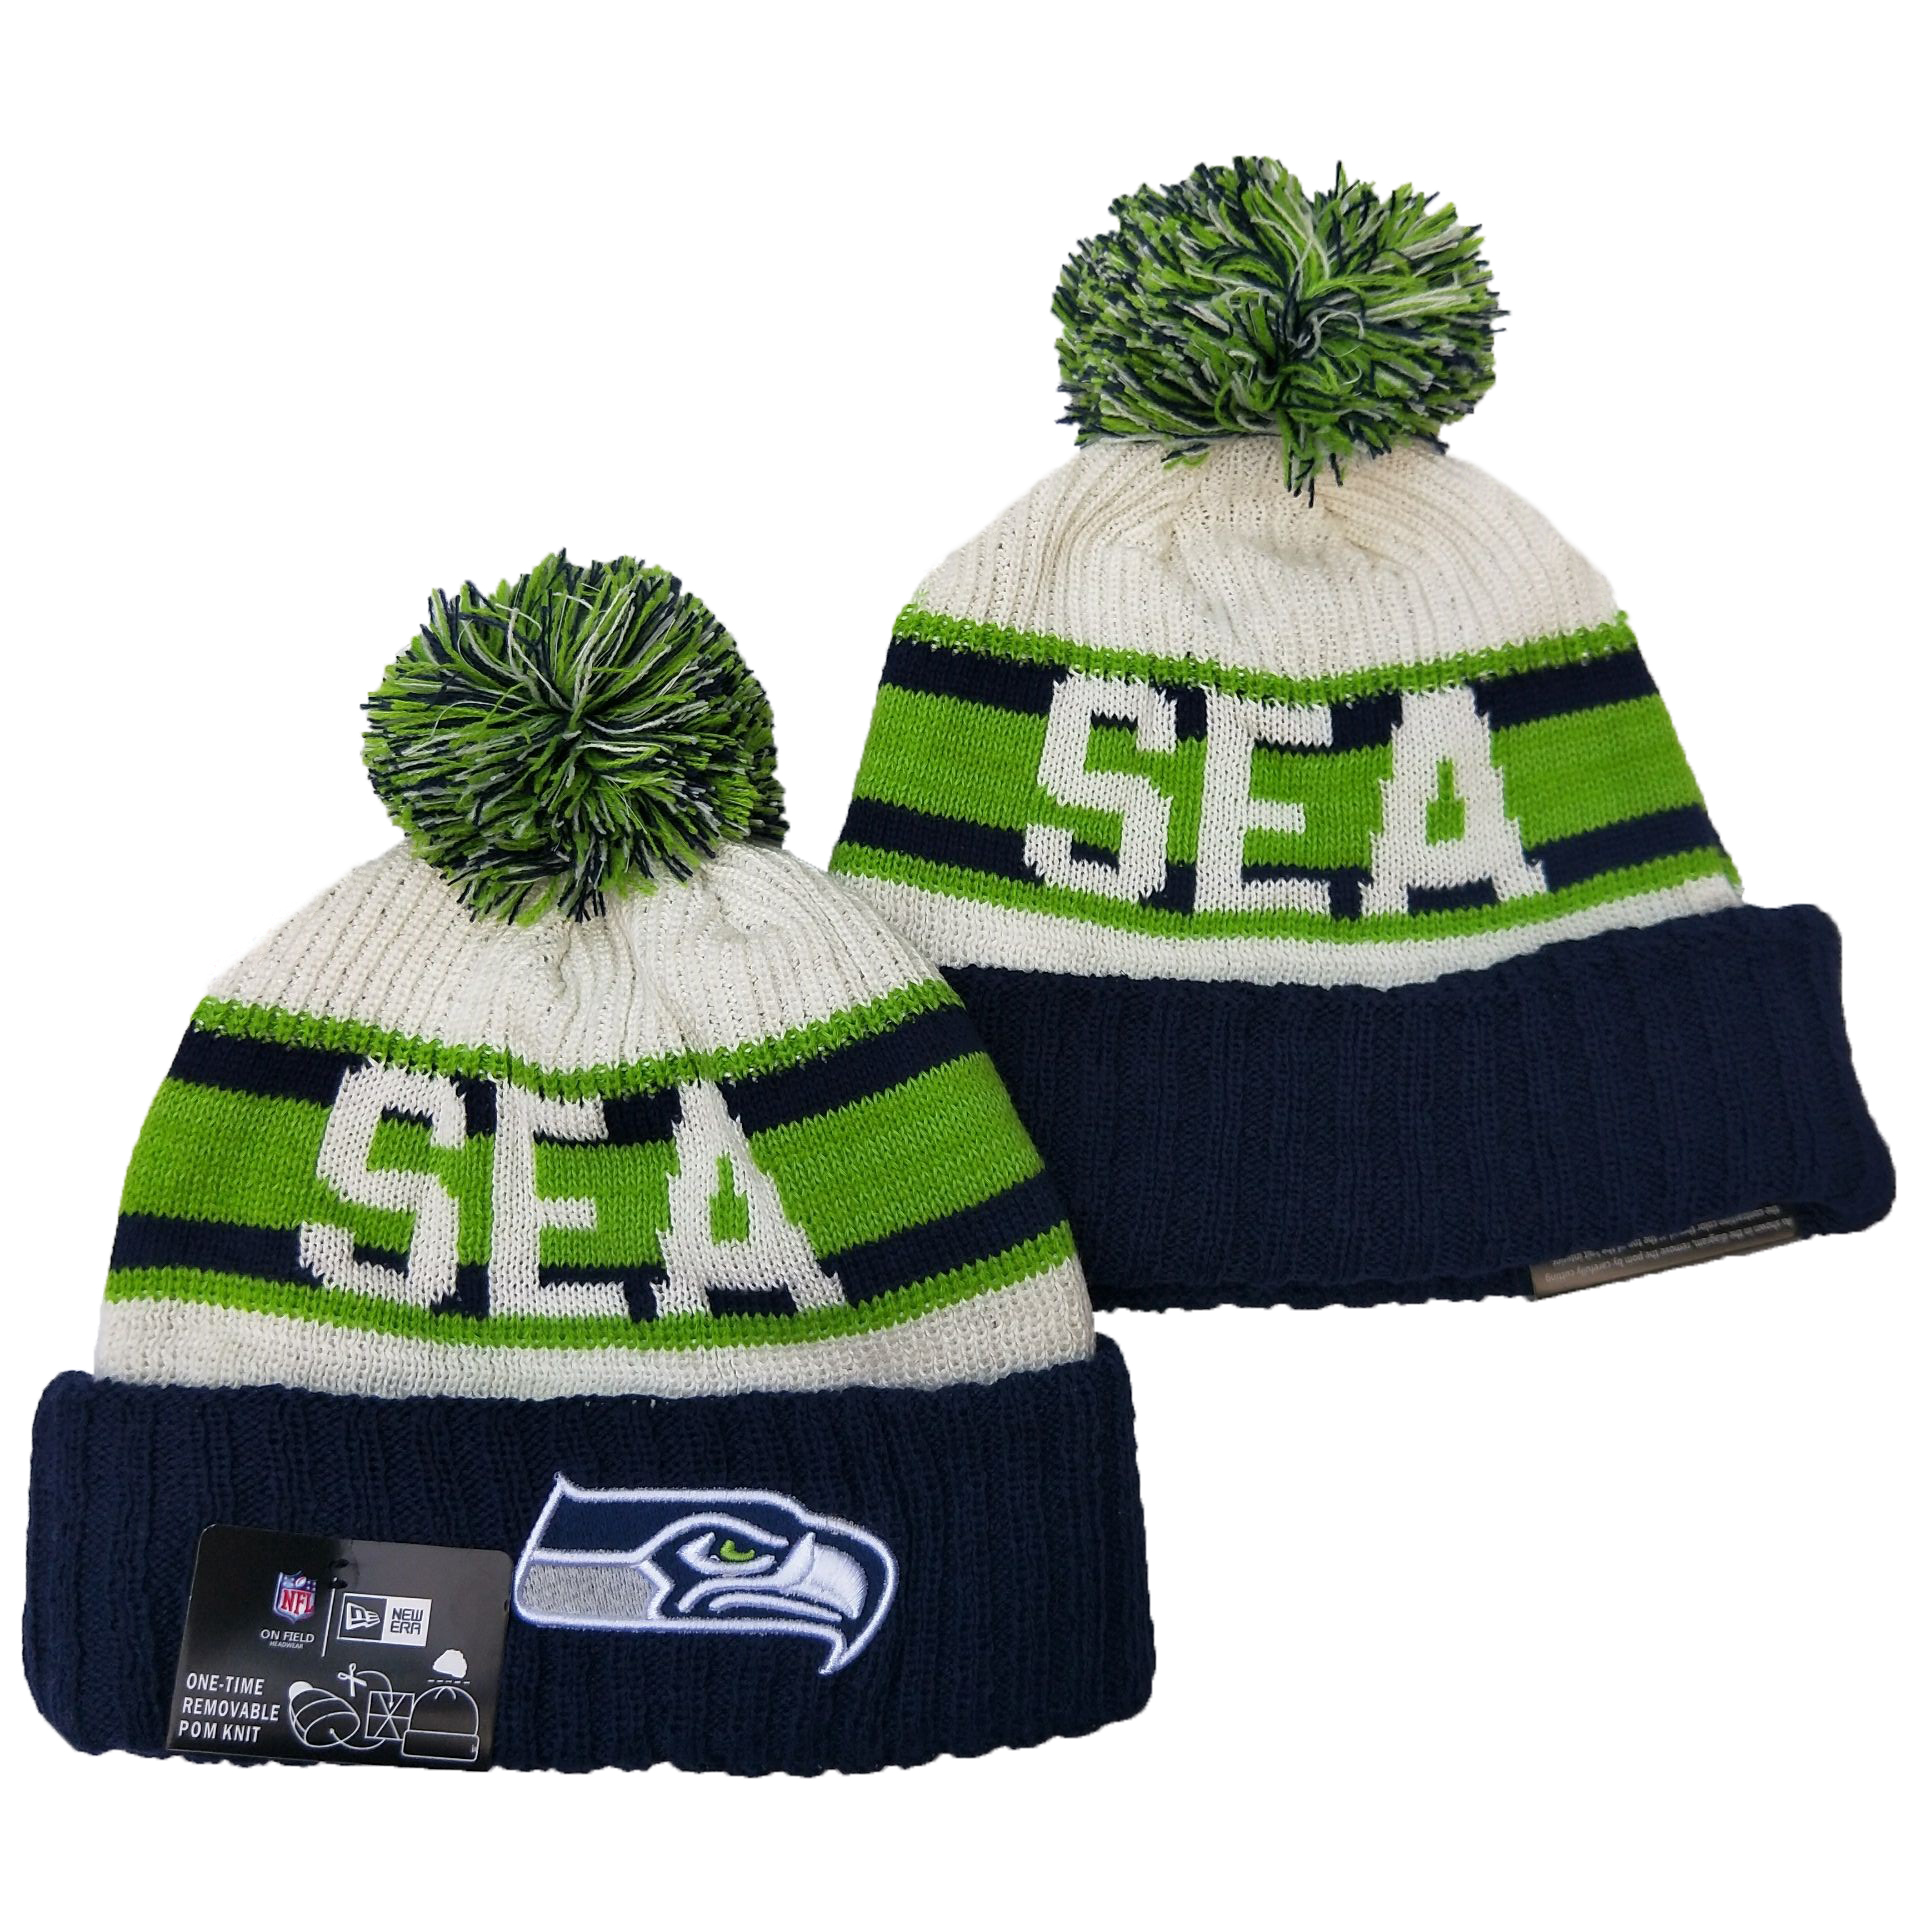 Seattle Seahawks Knit Hats 084